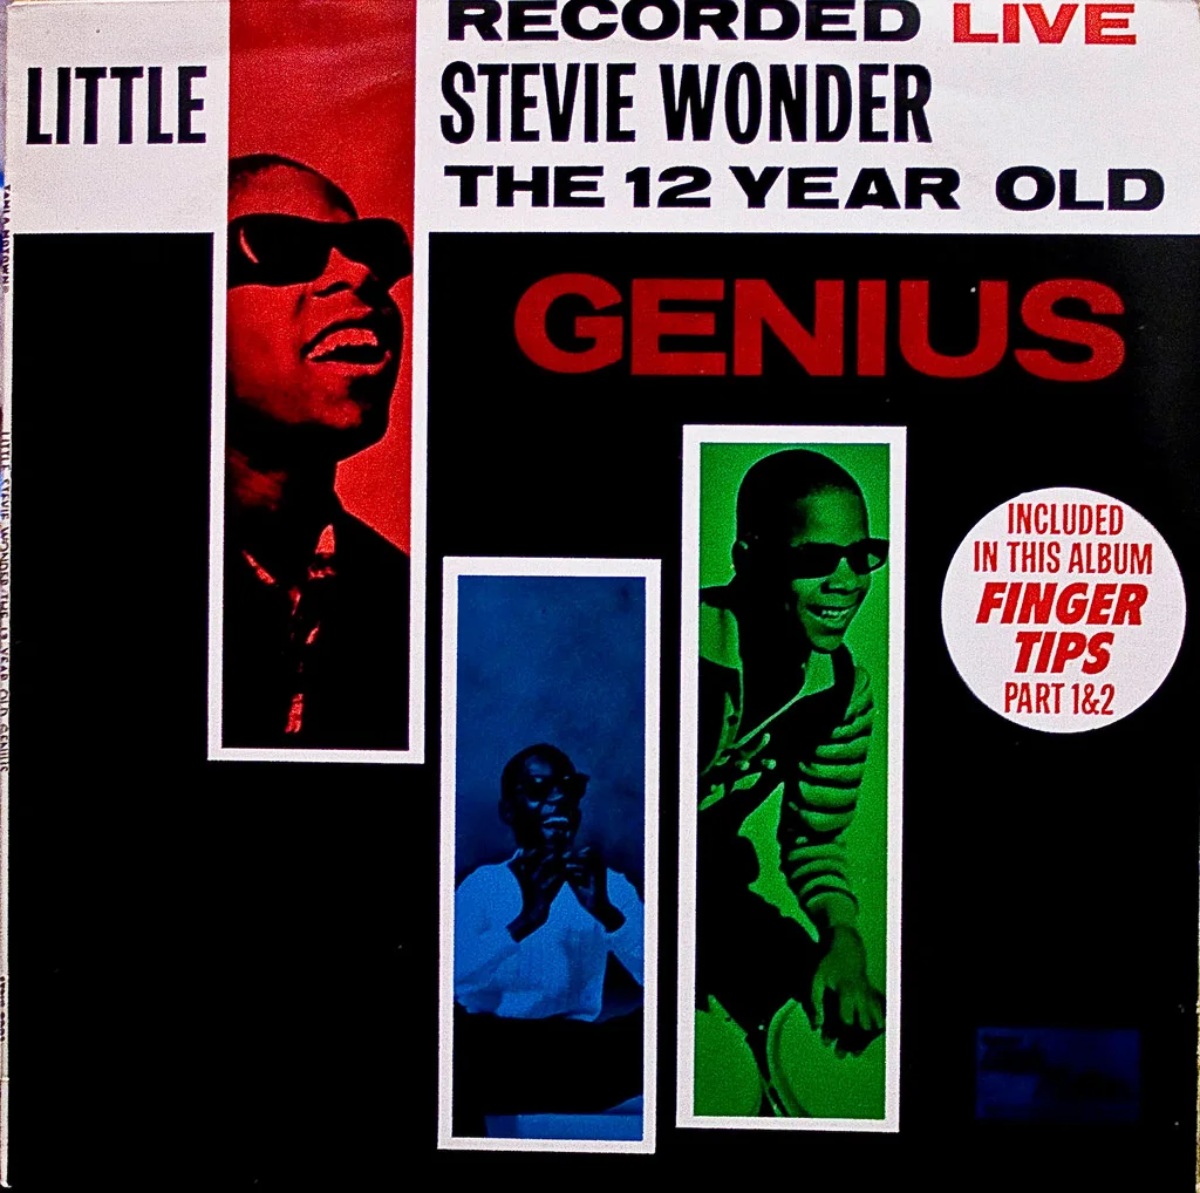 Portada de Stevie Wonder grabada en directo: El genio de 12 años